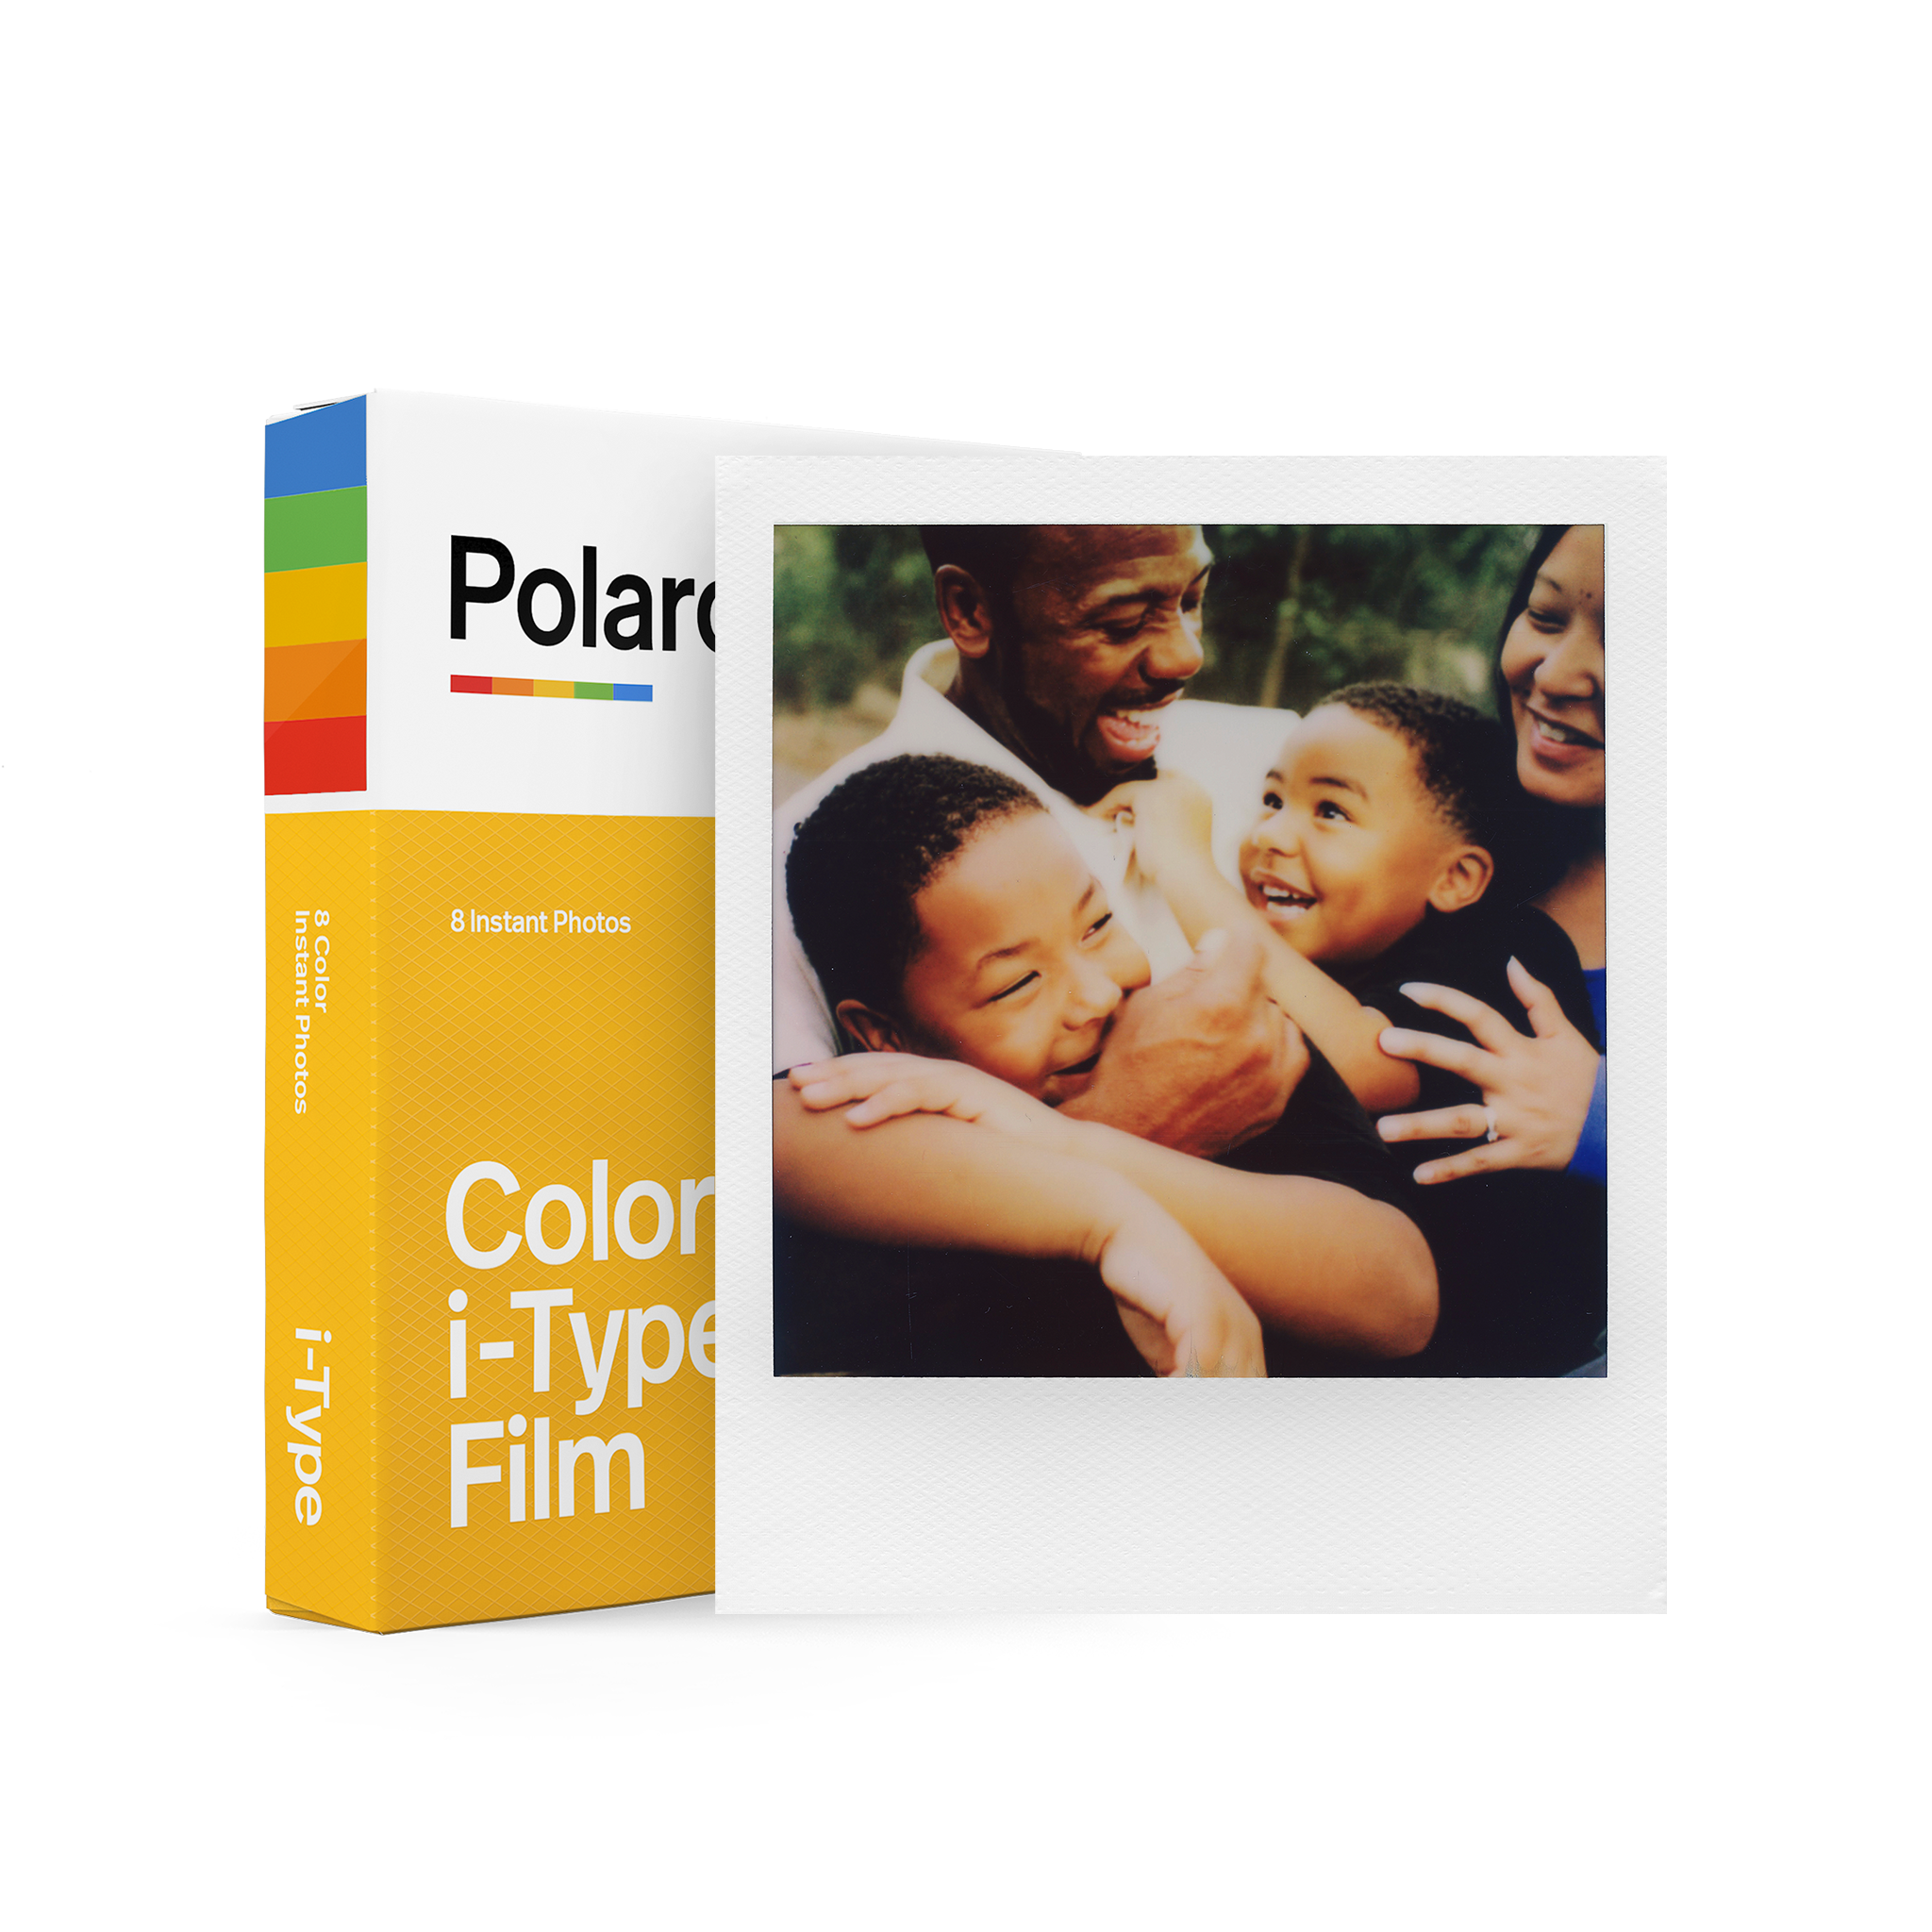 40x Film Pack 6010 40 Photos Polaroid Instant Color I-Type Film 